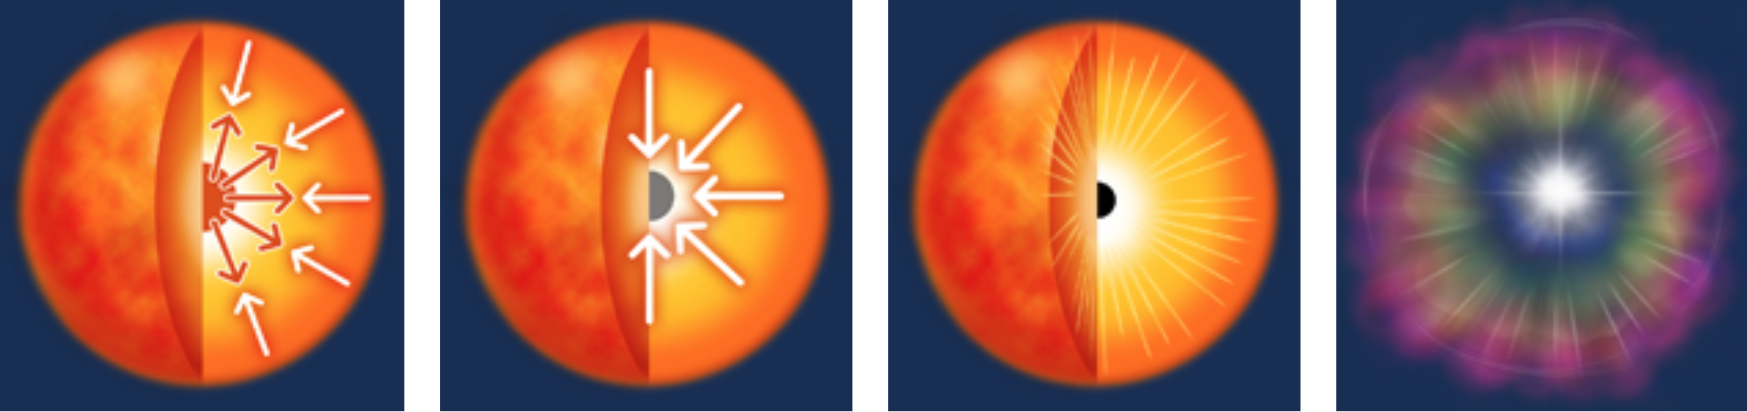 観測史上「最高度の明るさ」を放つ超新星爆発を確認！仮説上の星の実例かの画像 2/4